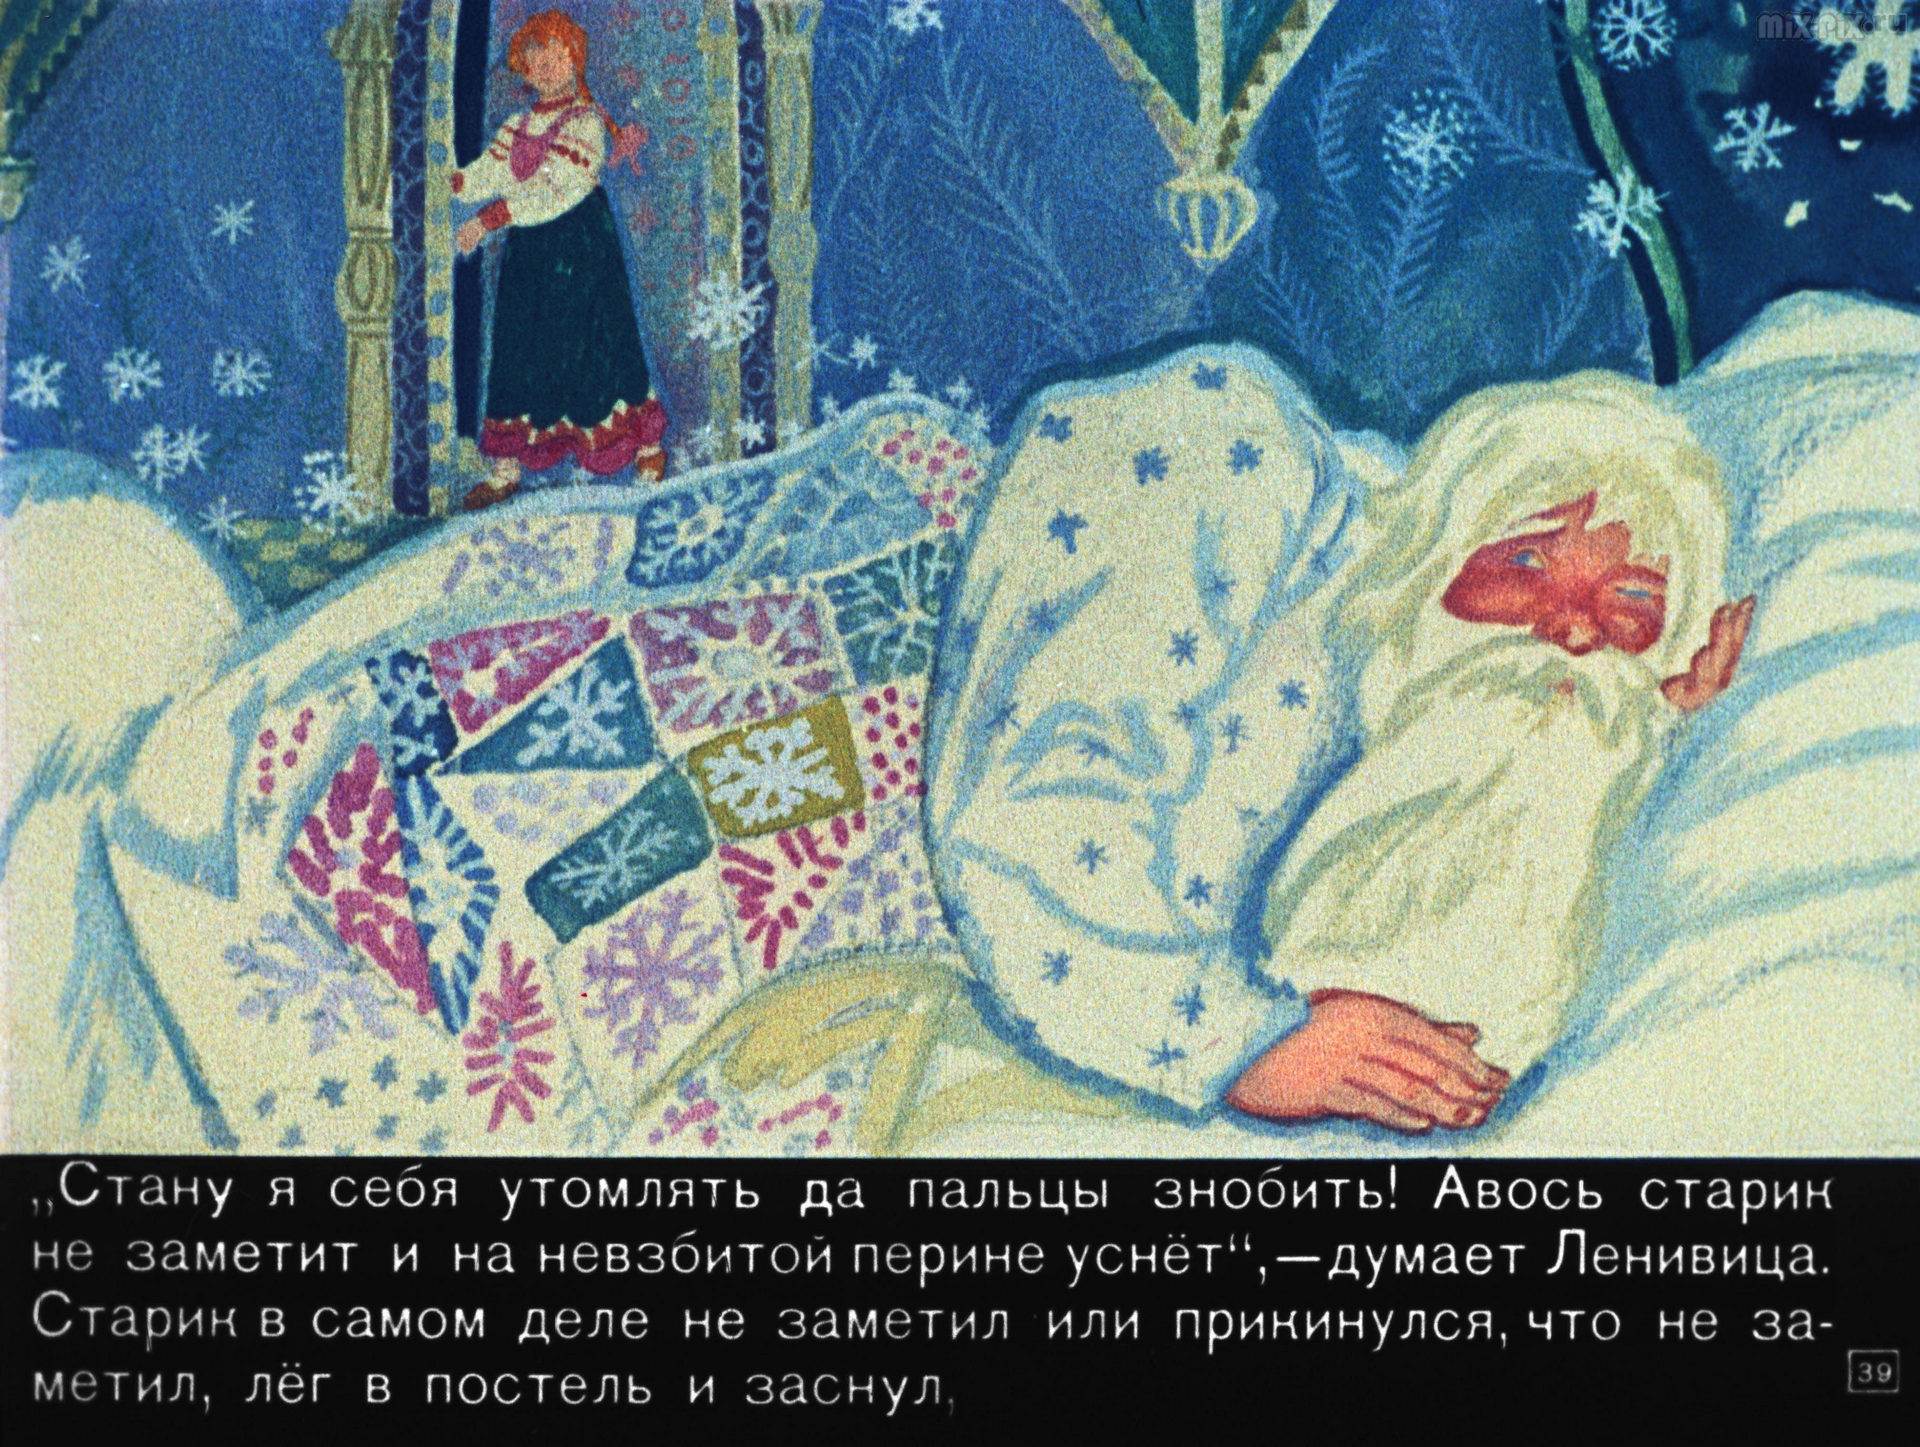 Иллюстрации к сказке Мороз Иванович Ленивица